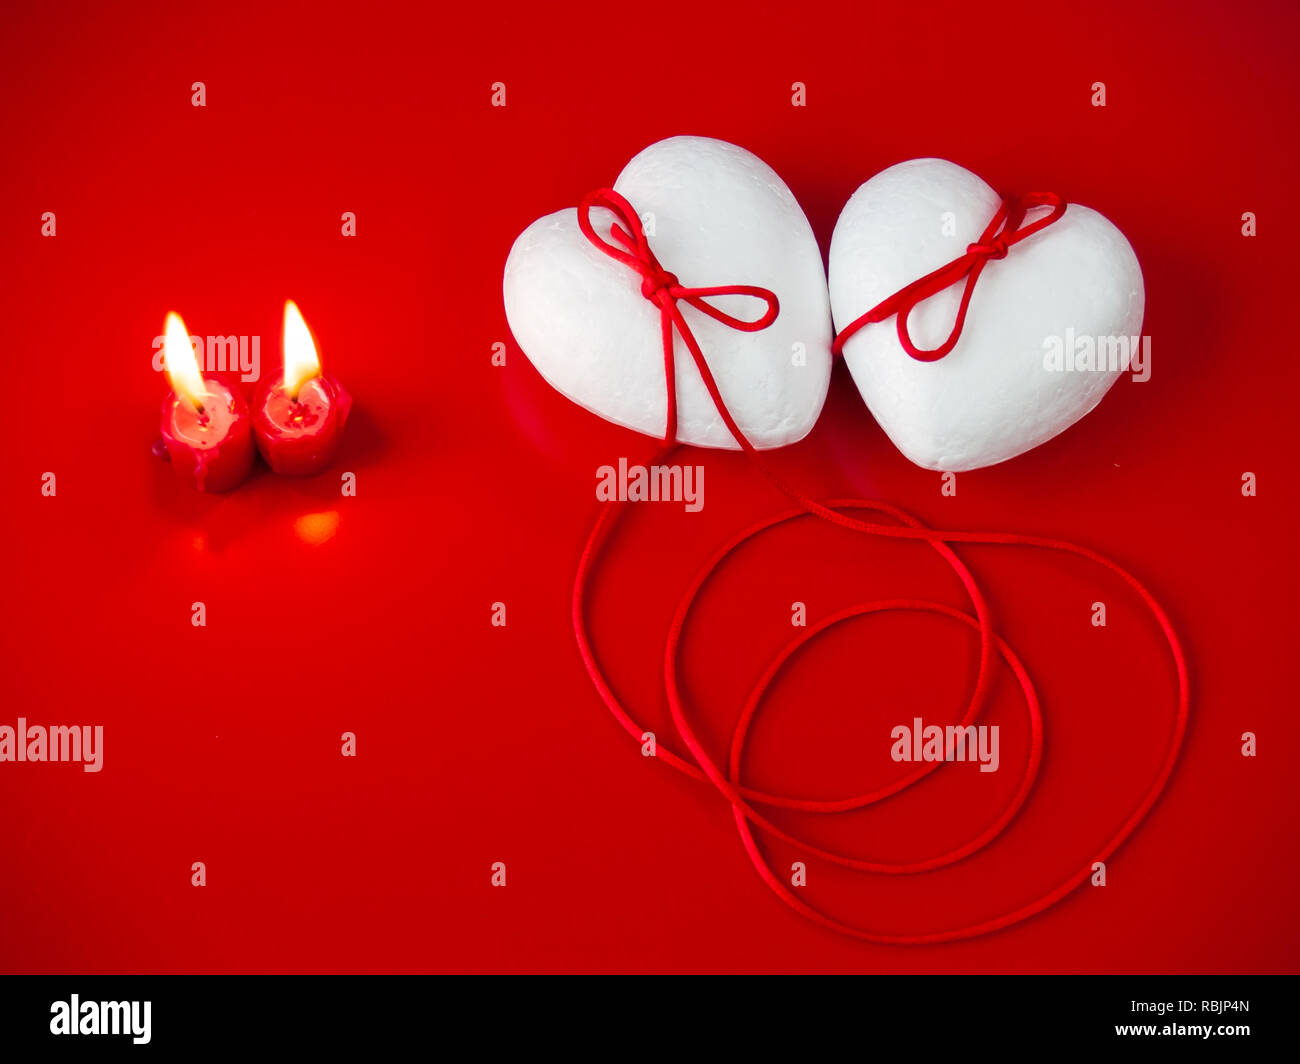 Concetto di amore poliespan due cuori uniti con un filo rosso che simboleggia la leggenda del filo rosso e rosso due candele accese Foto Stock